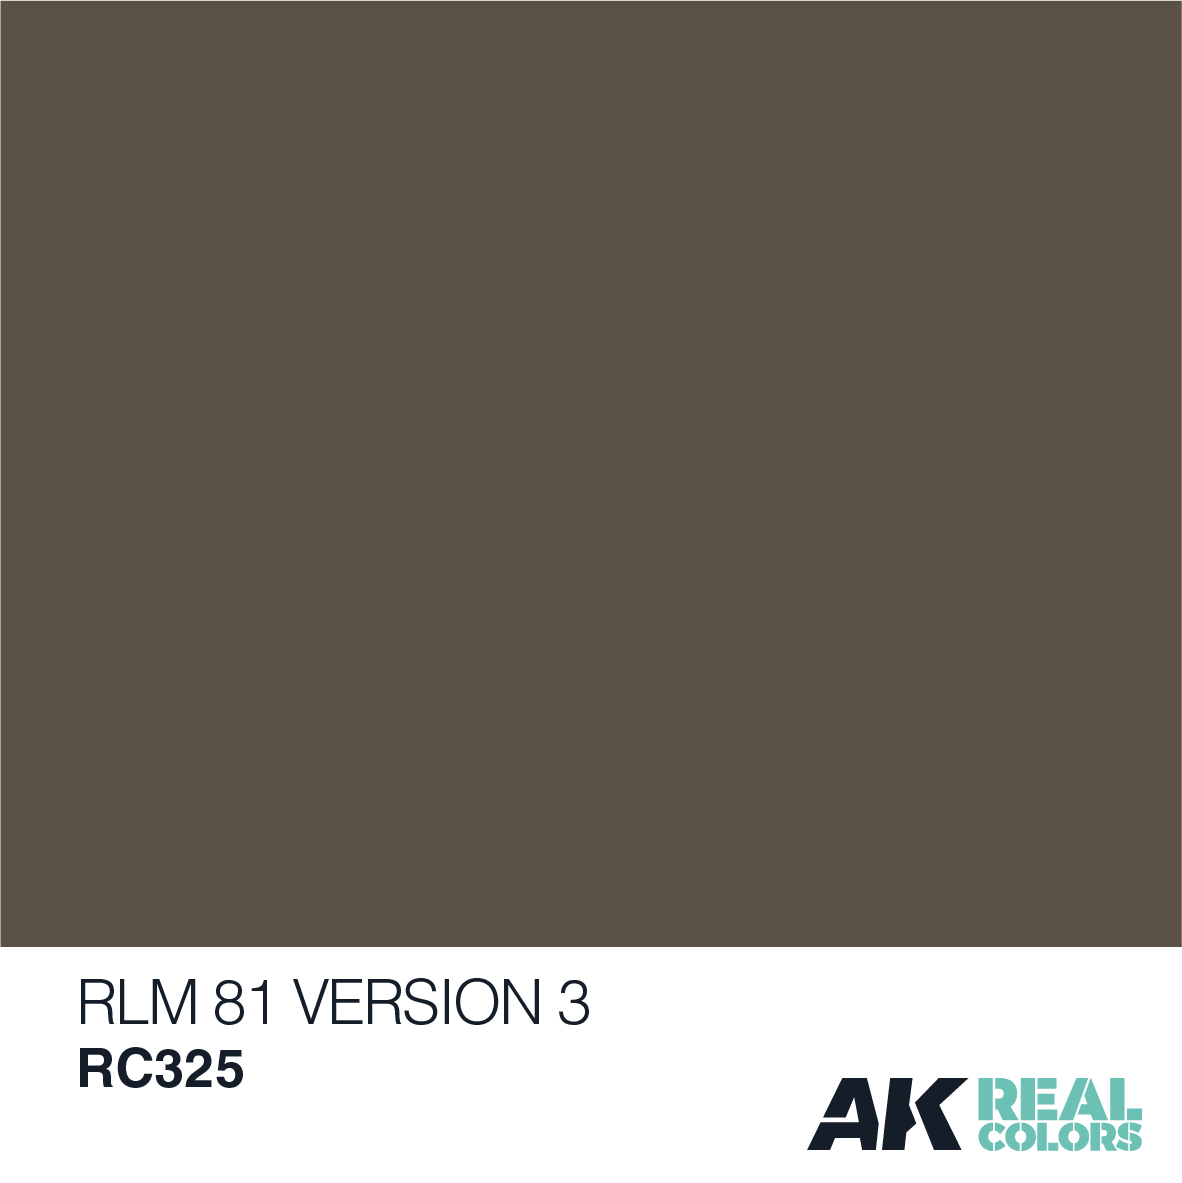 RLM 81 Version 3